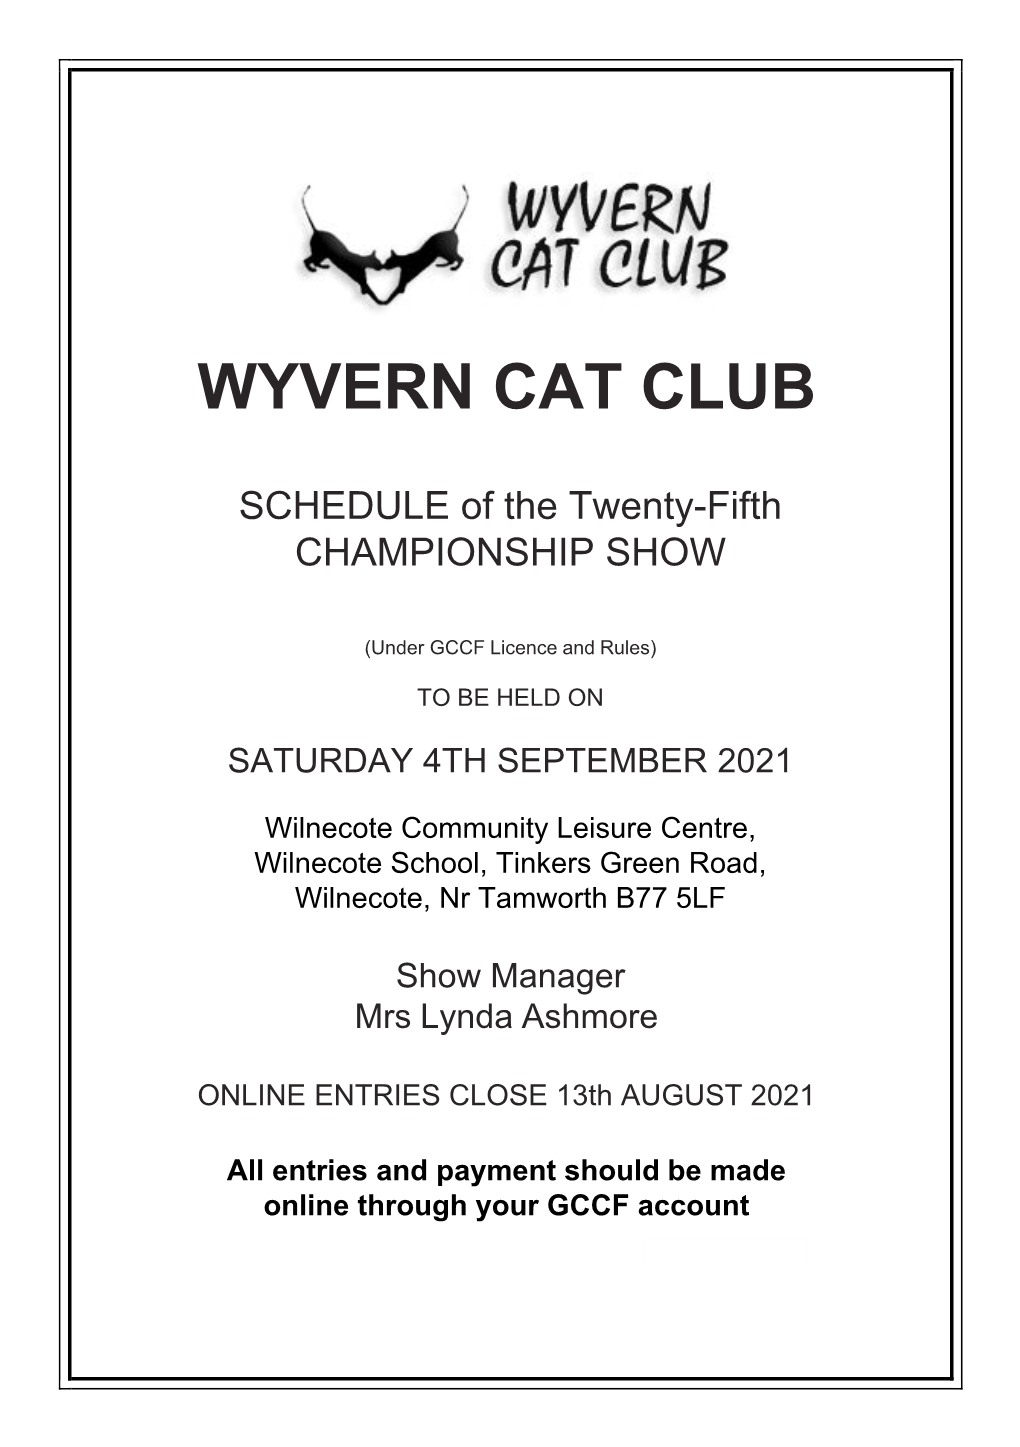 Wyvern Cat Club